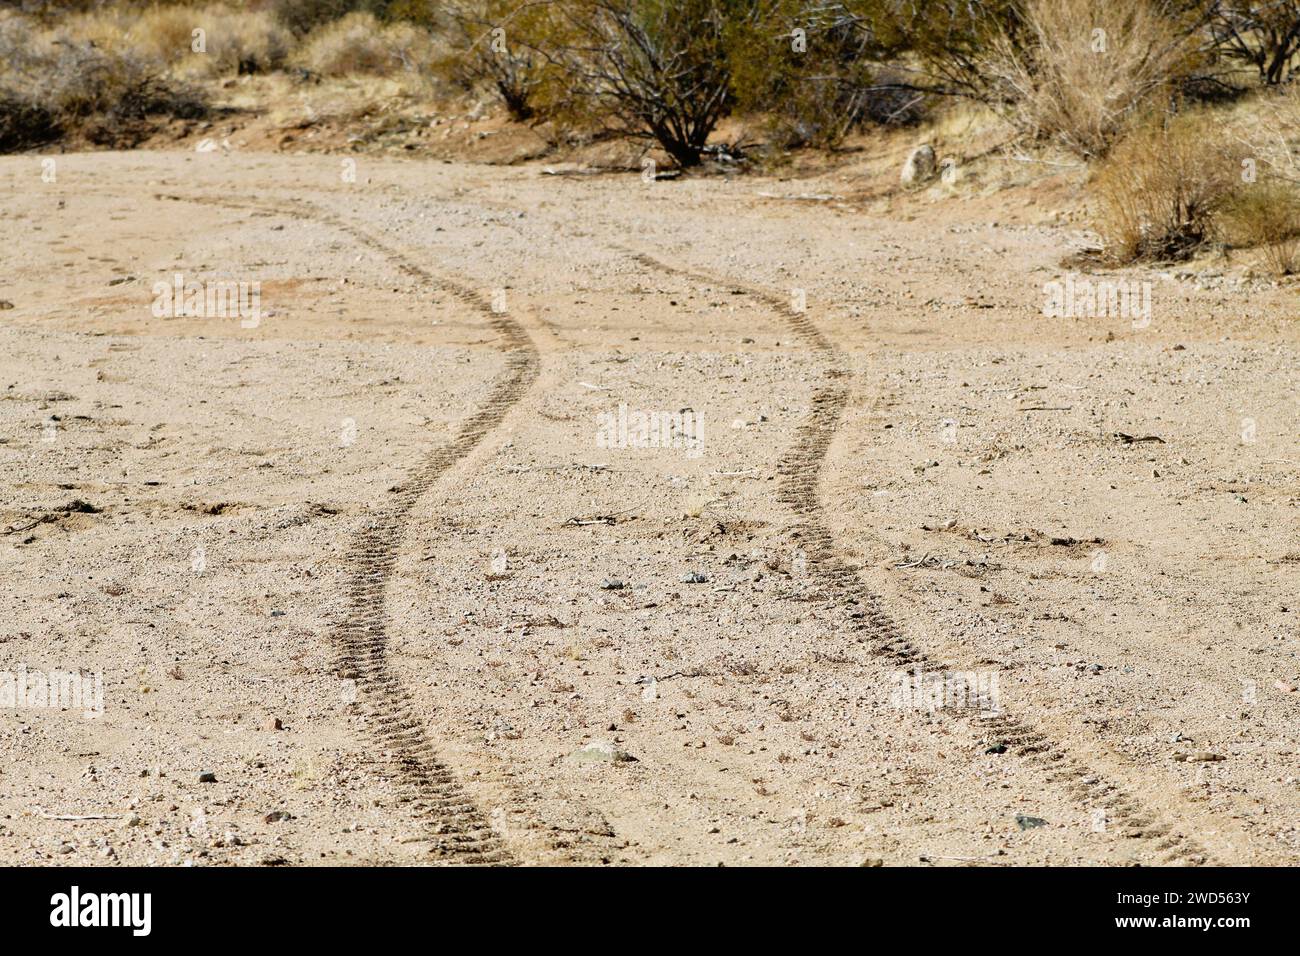 Tire tracks in the desert sand Stock Photo